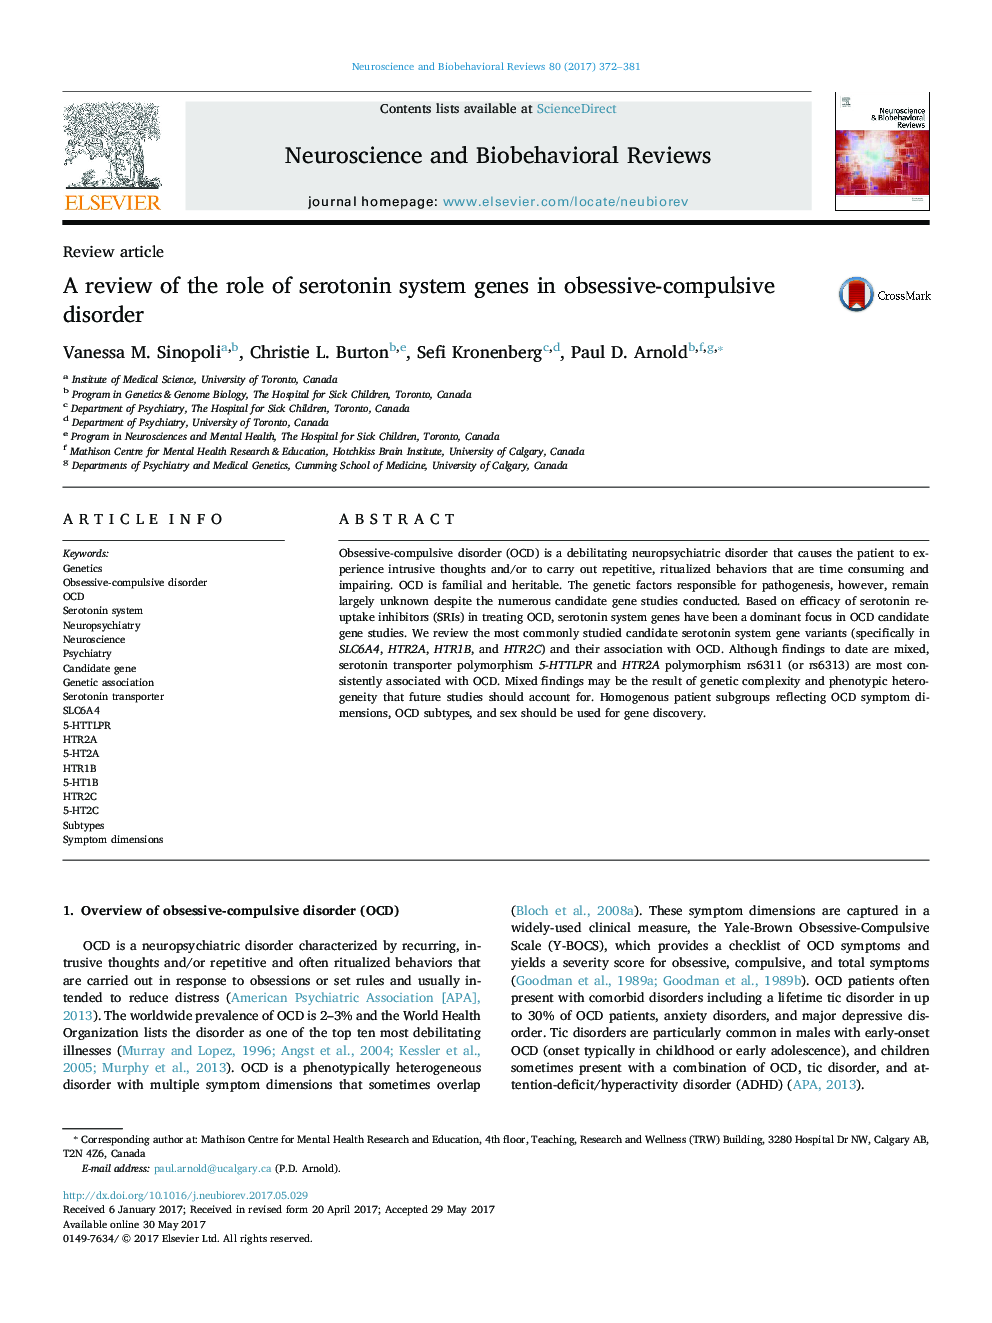 بررسی نقش ژنهای سیستم سروتونین در اختلال وسواسی-اجباری 